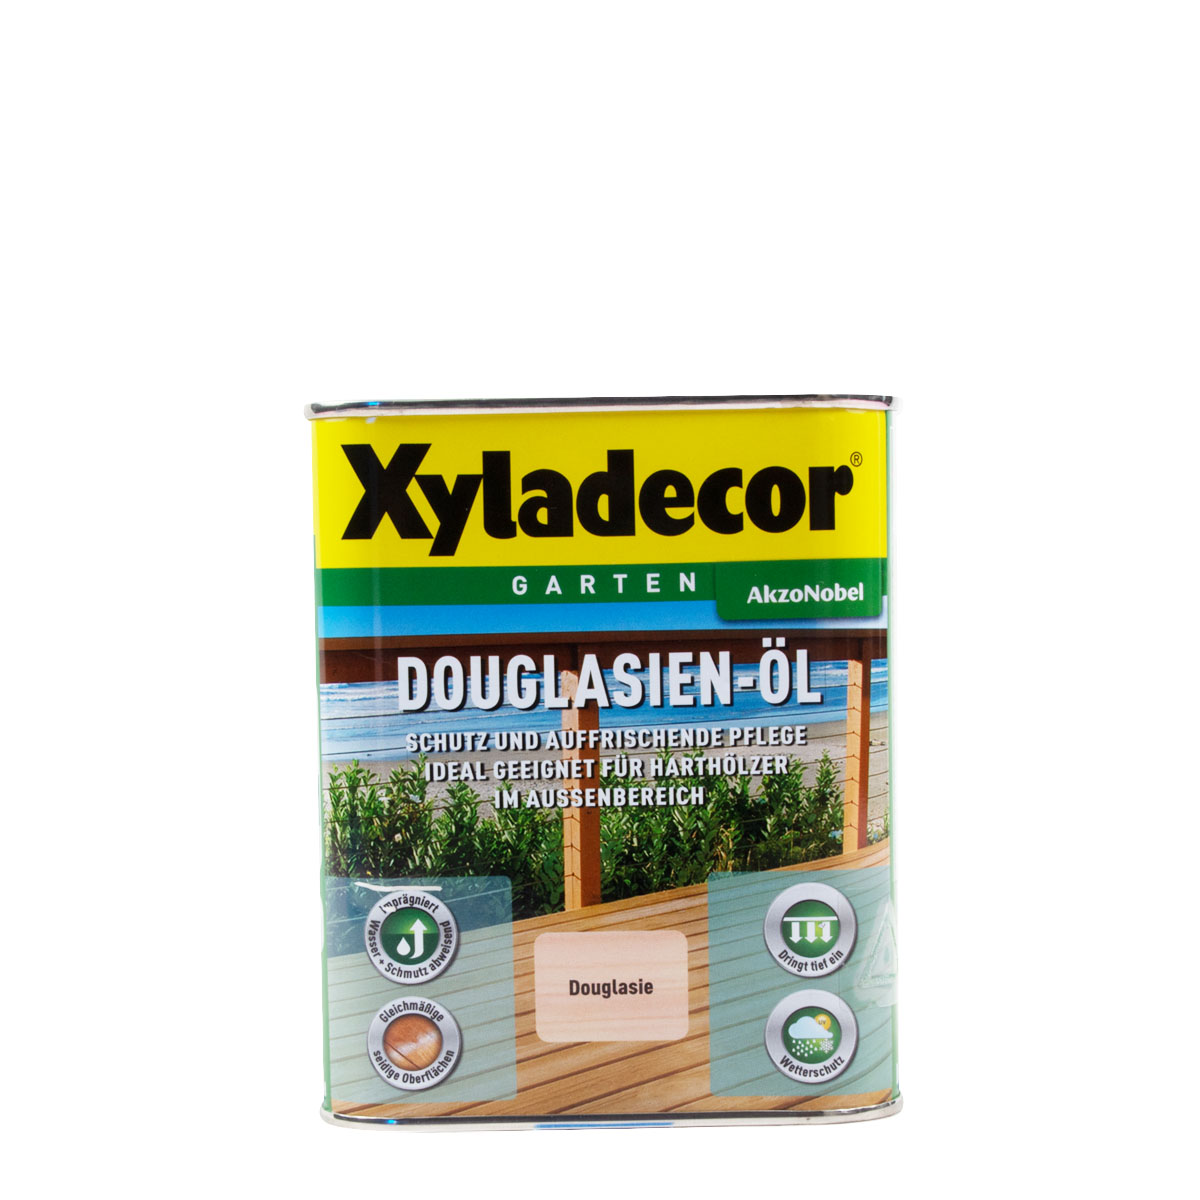 Xyladecor Douglasien-Öl 750ml, Pflegeöl, Terrassenöl